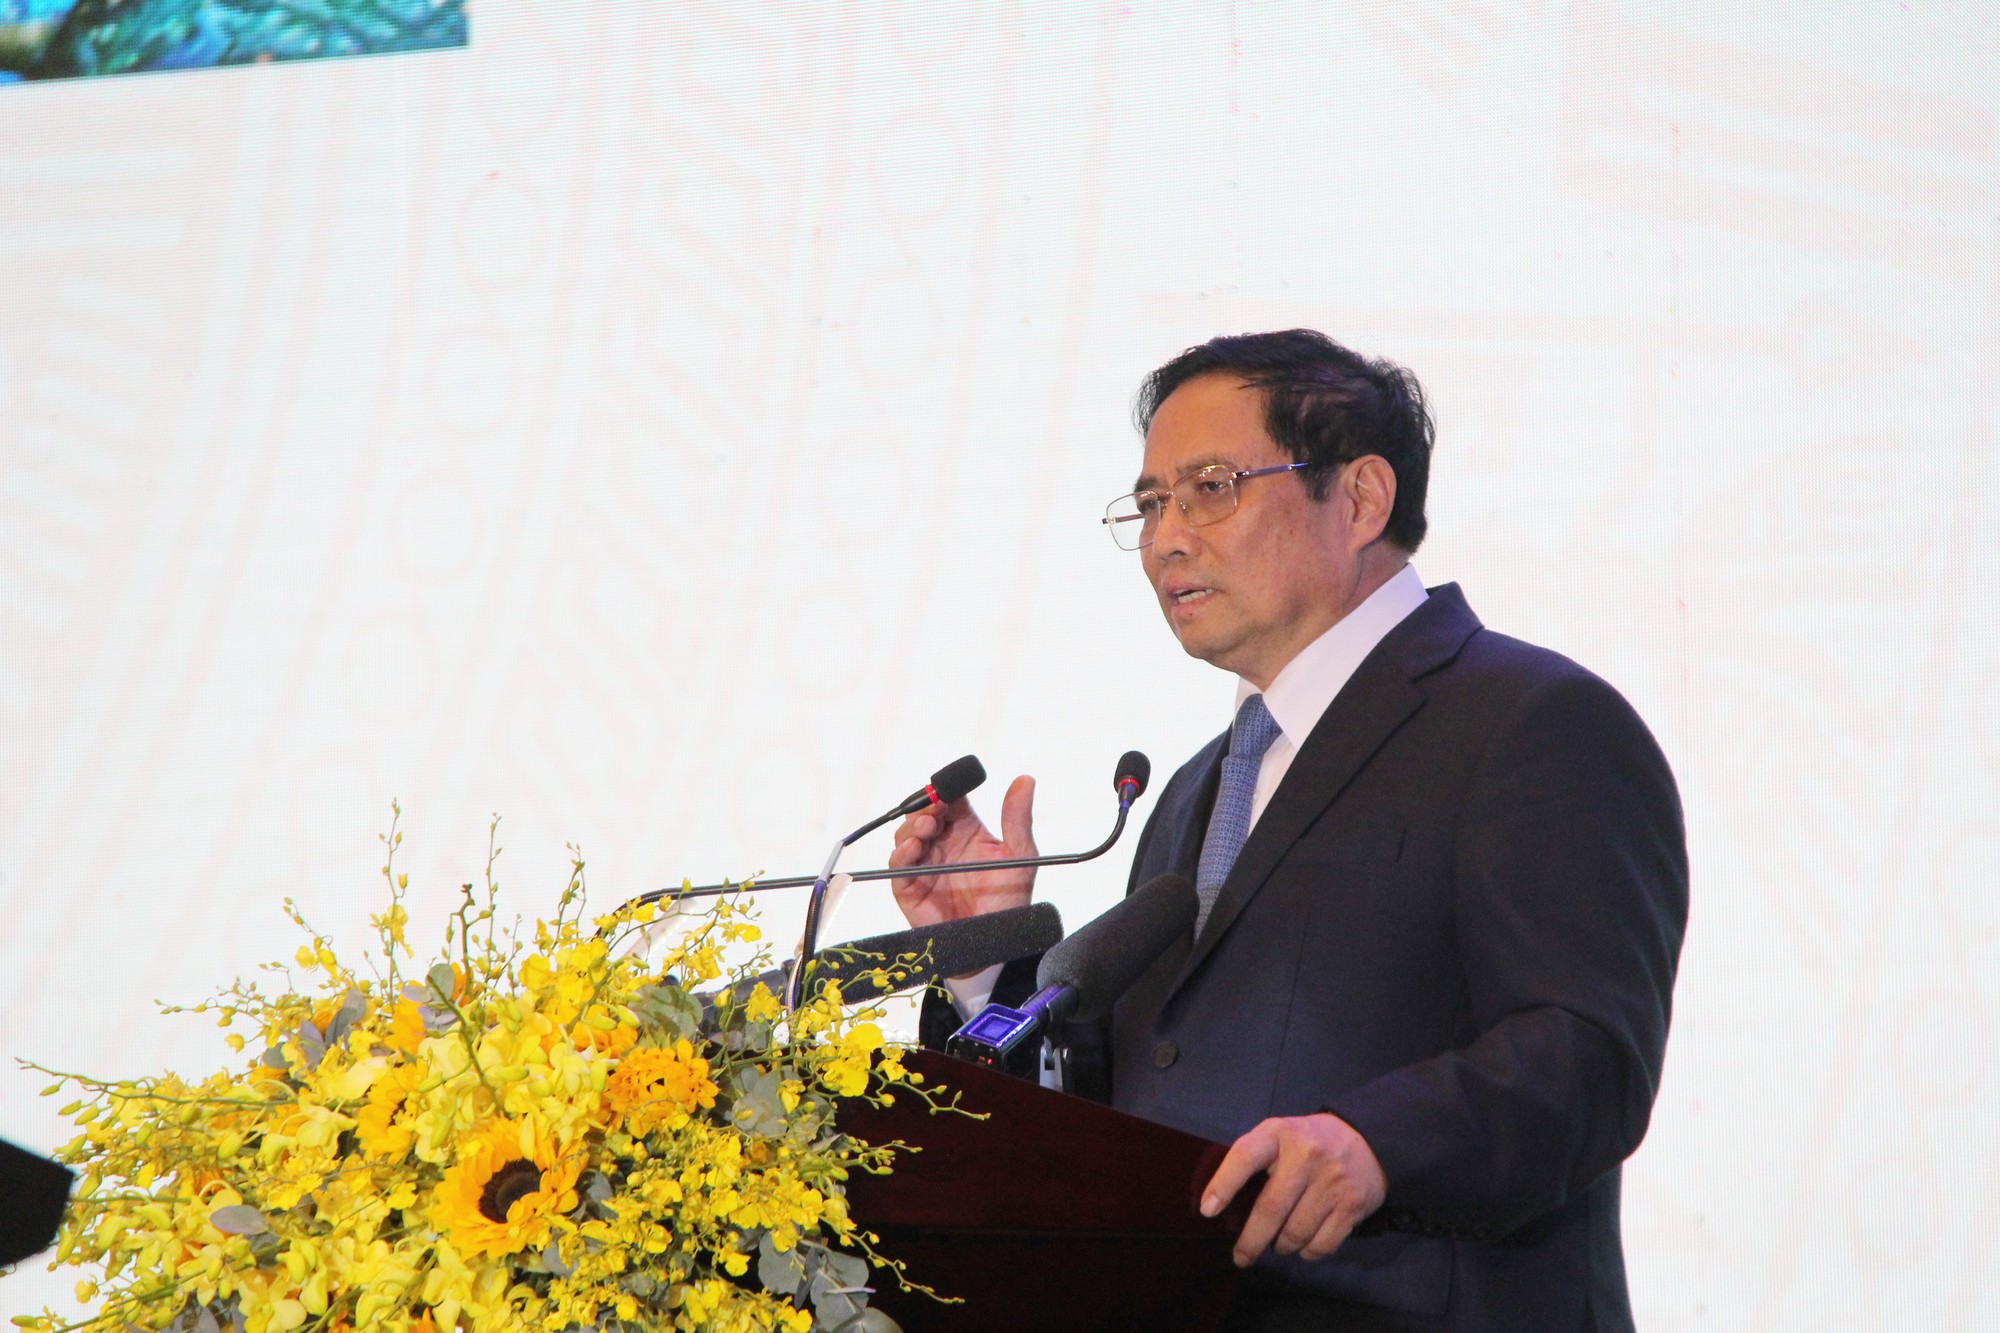 Phát biểu tại Diễn đàn Đầu tư Đà Nẵng, Thủ tướng Phạm Minh Chính bày tỏ cam kết mạnh mẽ về xây dựng môi trường đầu tư lành mạnh, bình đẳng và minh bạch, công khai